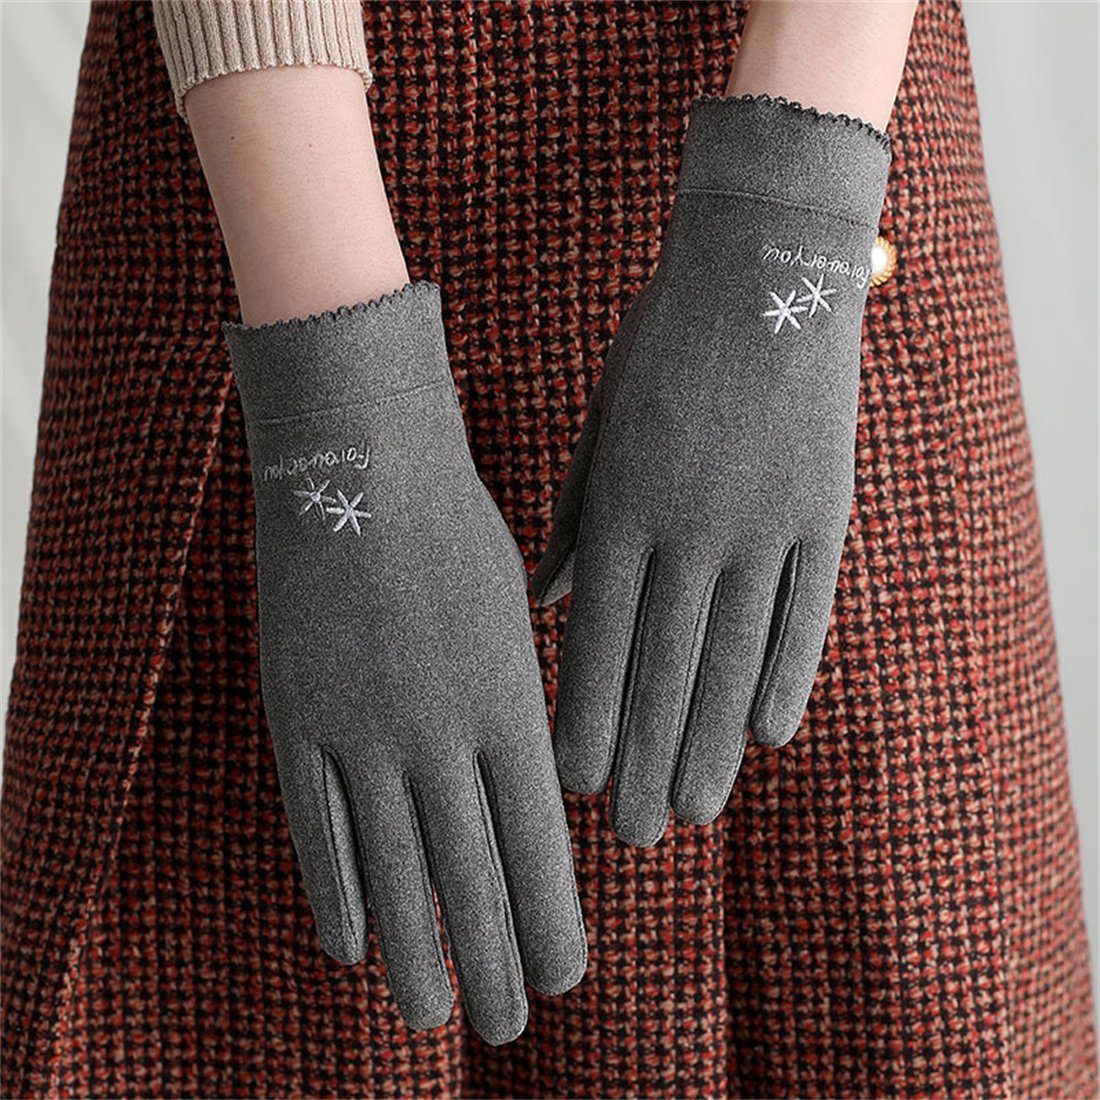 DÖRÖY Fleecehandschuhe Damenmode Reithandschuhe, Winter Touchscreen Warme Handschuhe Grau